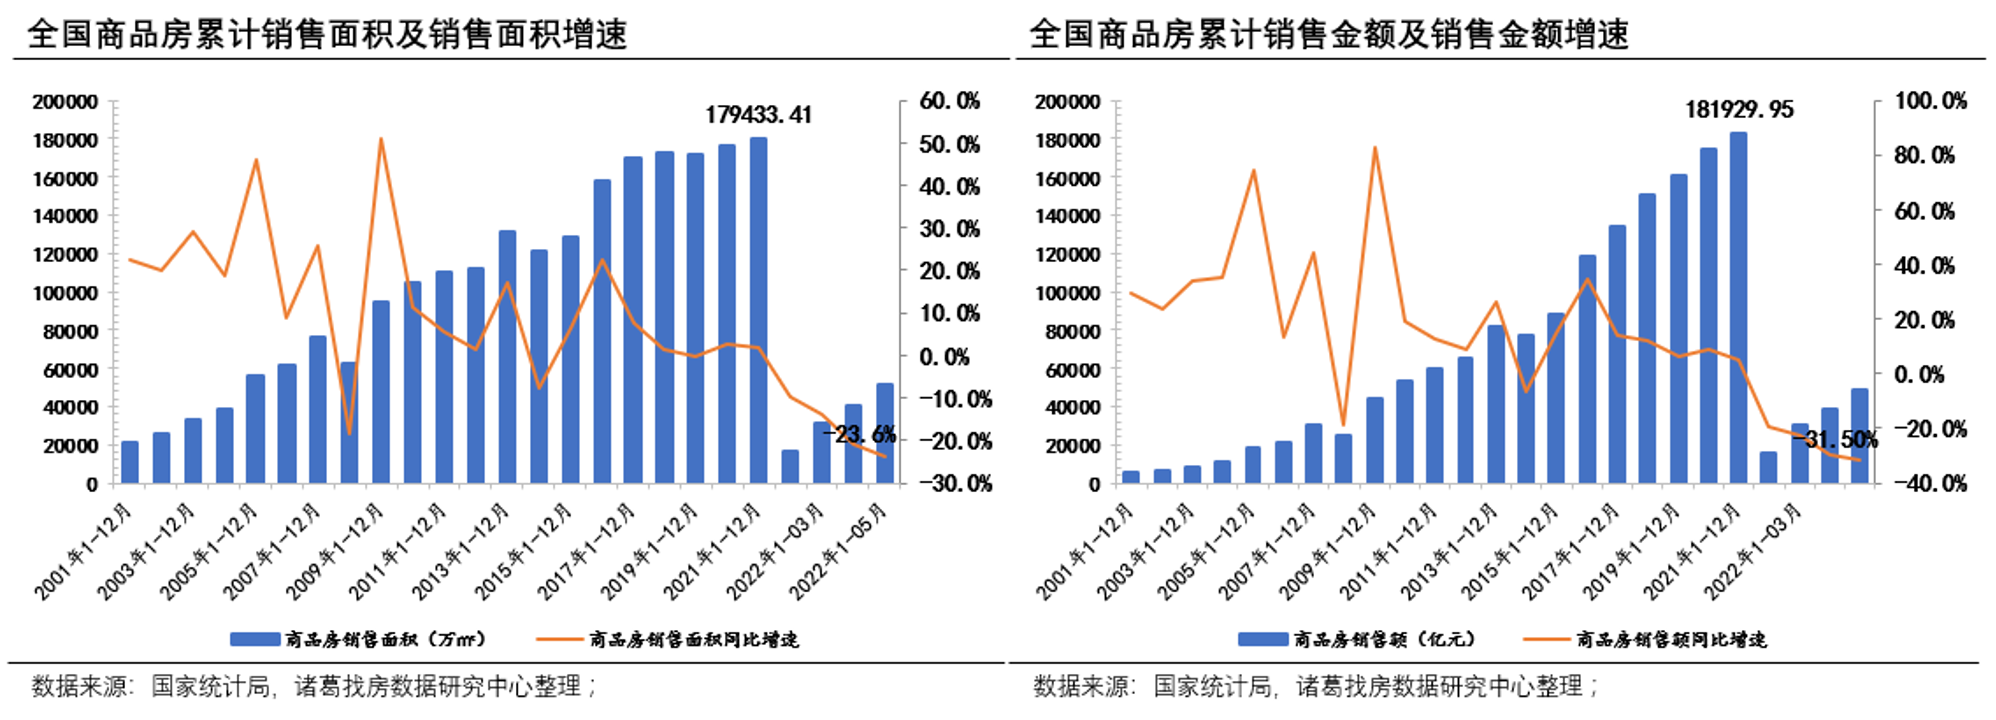 5月销售初现触底回升态势 但不及去年同期水平 _中国网地产